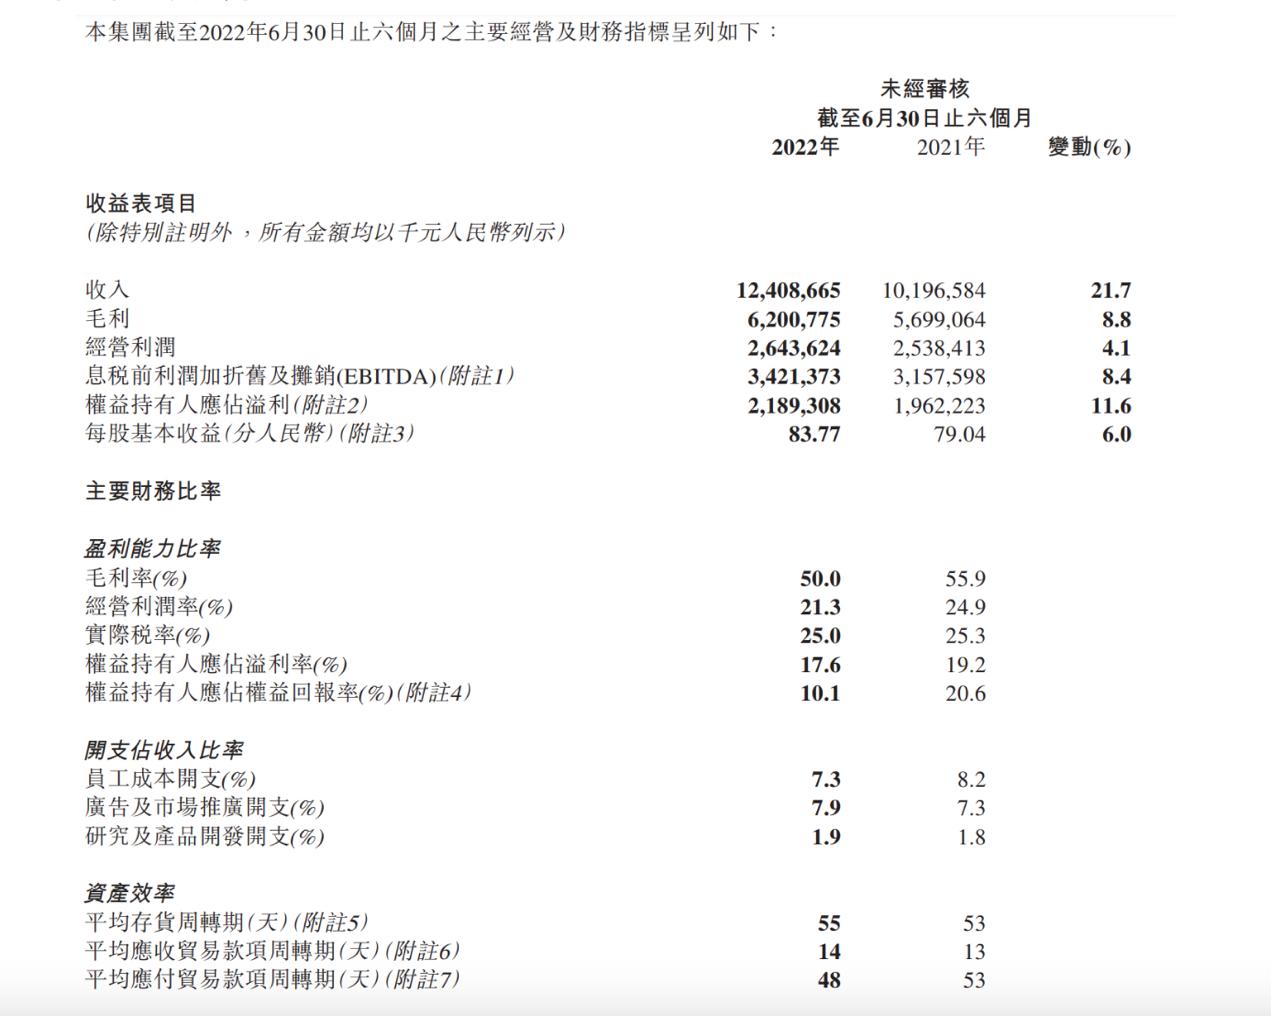 李宁上半年新店贡献1.95亿元增长 毛利率下滑5.9%